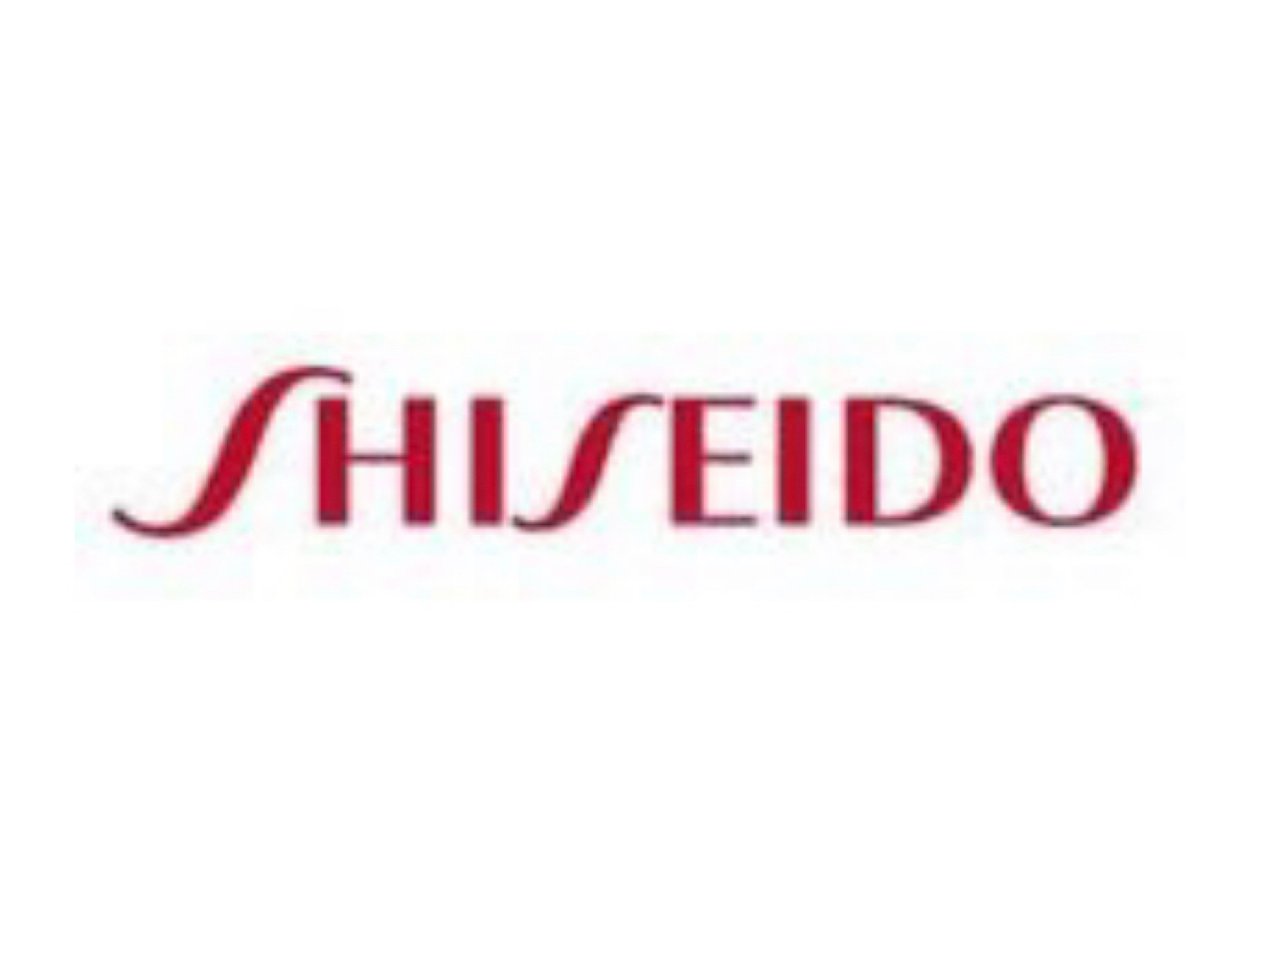 美股推荐 —— Shiseido Co...